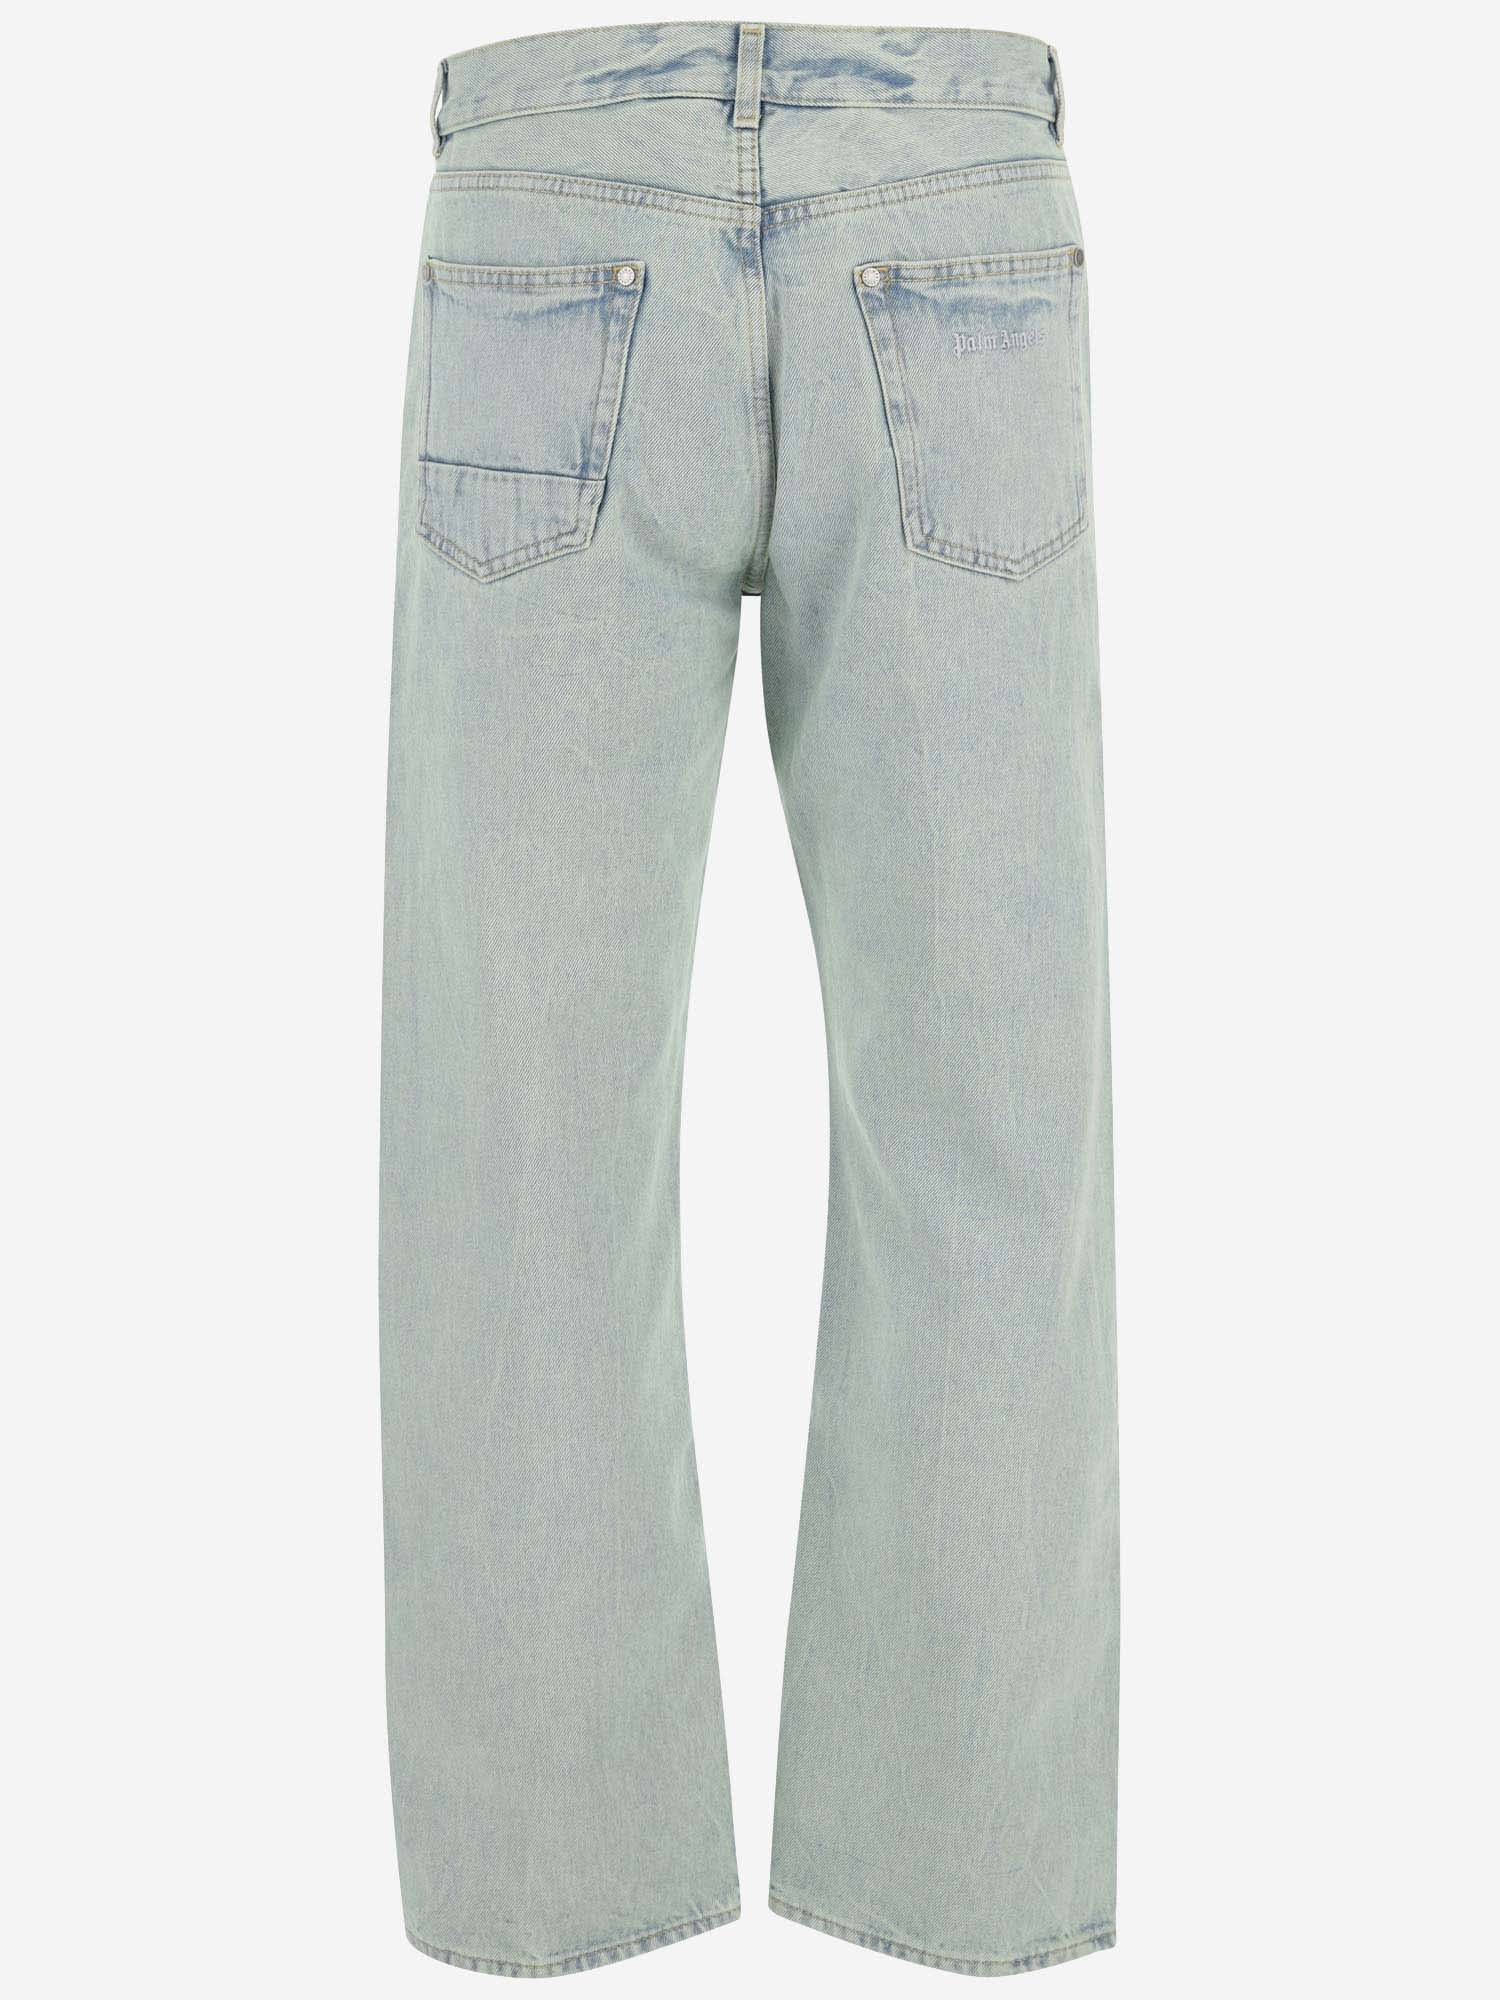 Shop Palm Angels Cotton Denim Jeans